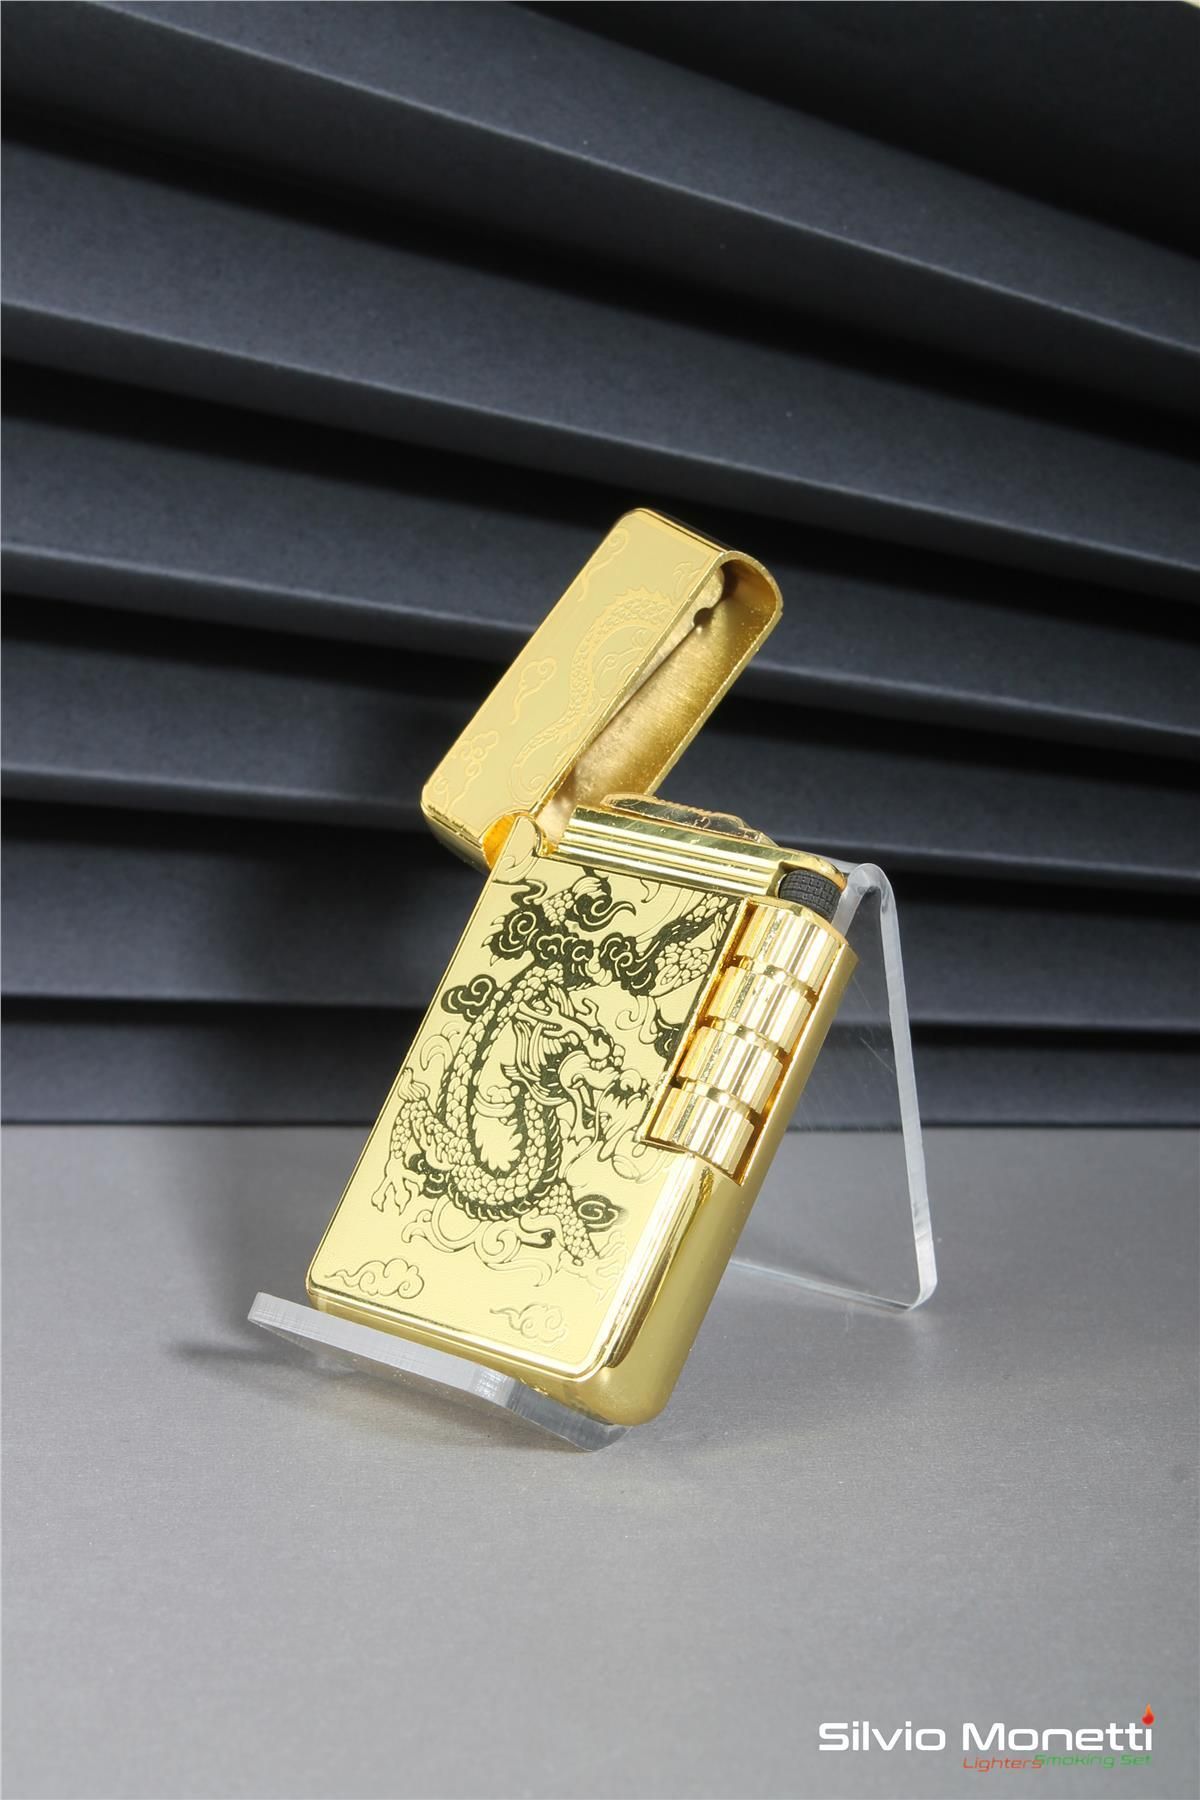 Silvio Monetti Altın Özel Tasarım Işlemeli Kapaklı Model Gazlı Çakmak 24csm813atr01